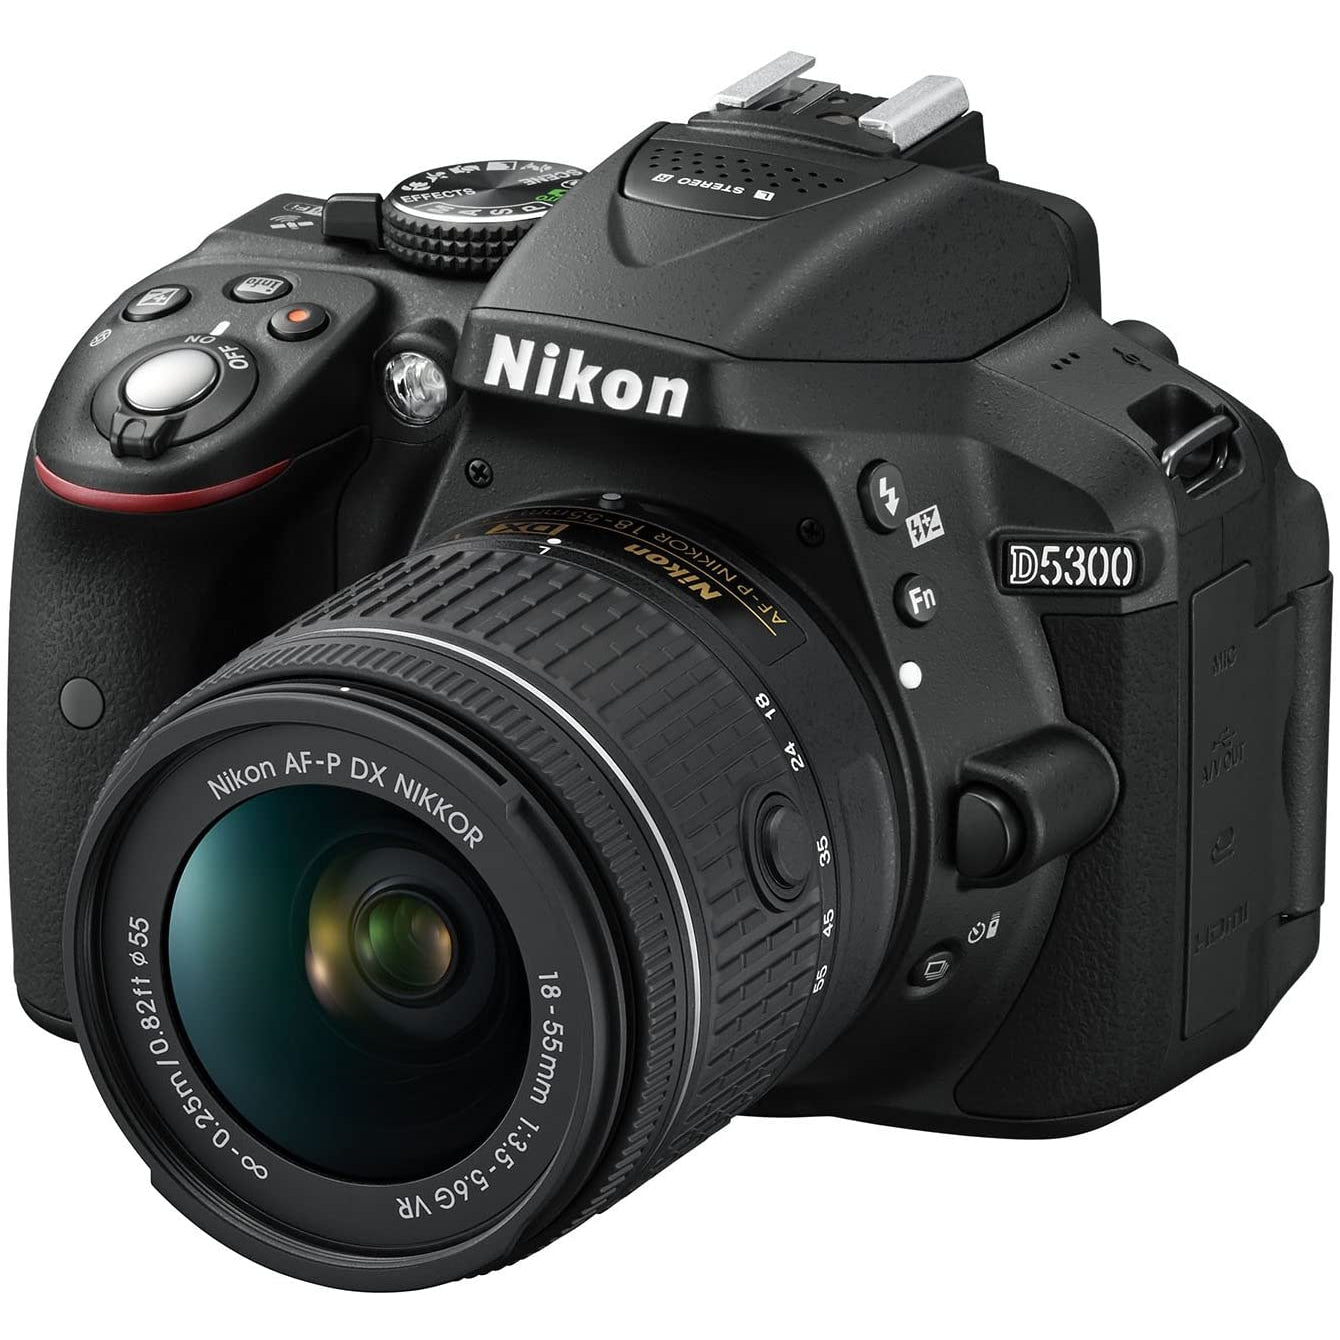 Nikon D5300 DSLR Camera in Black